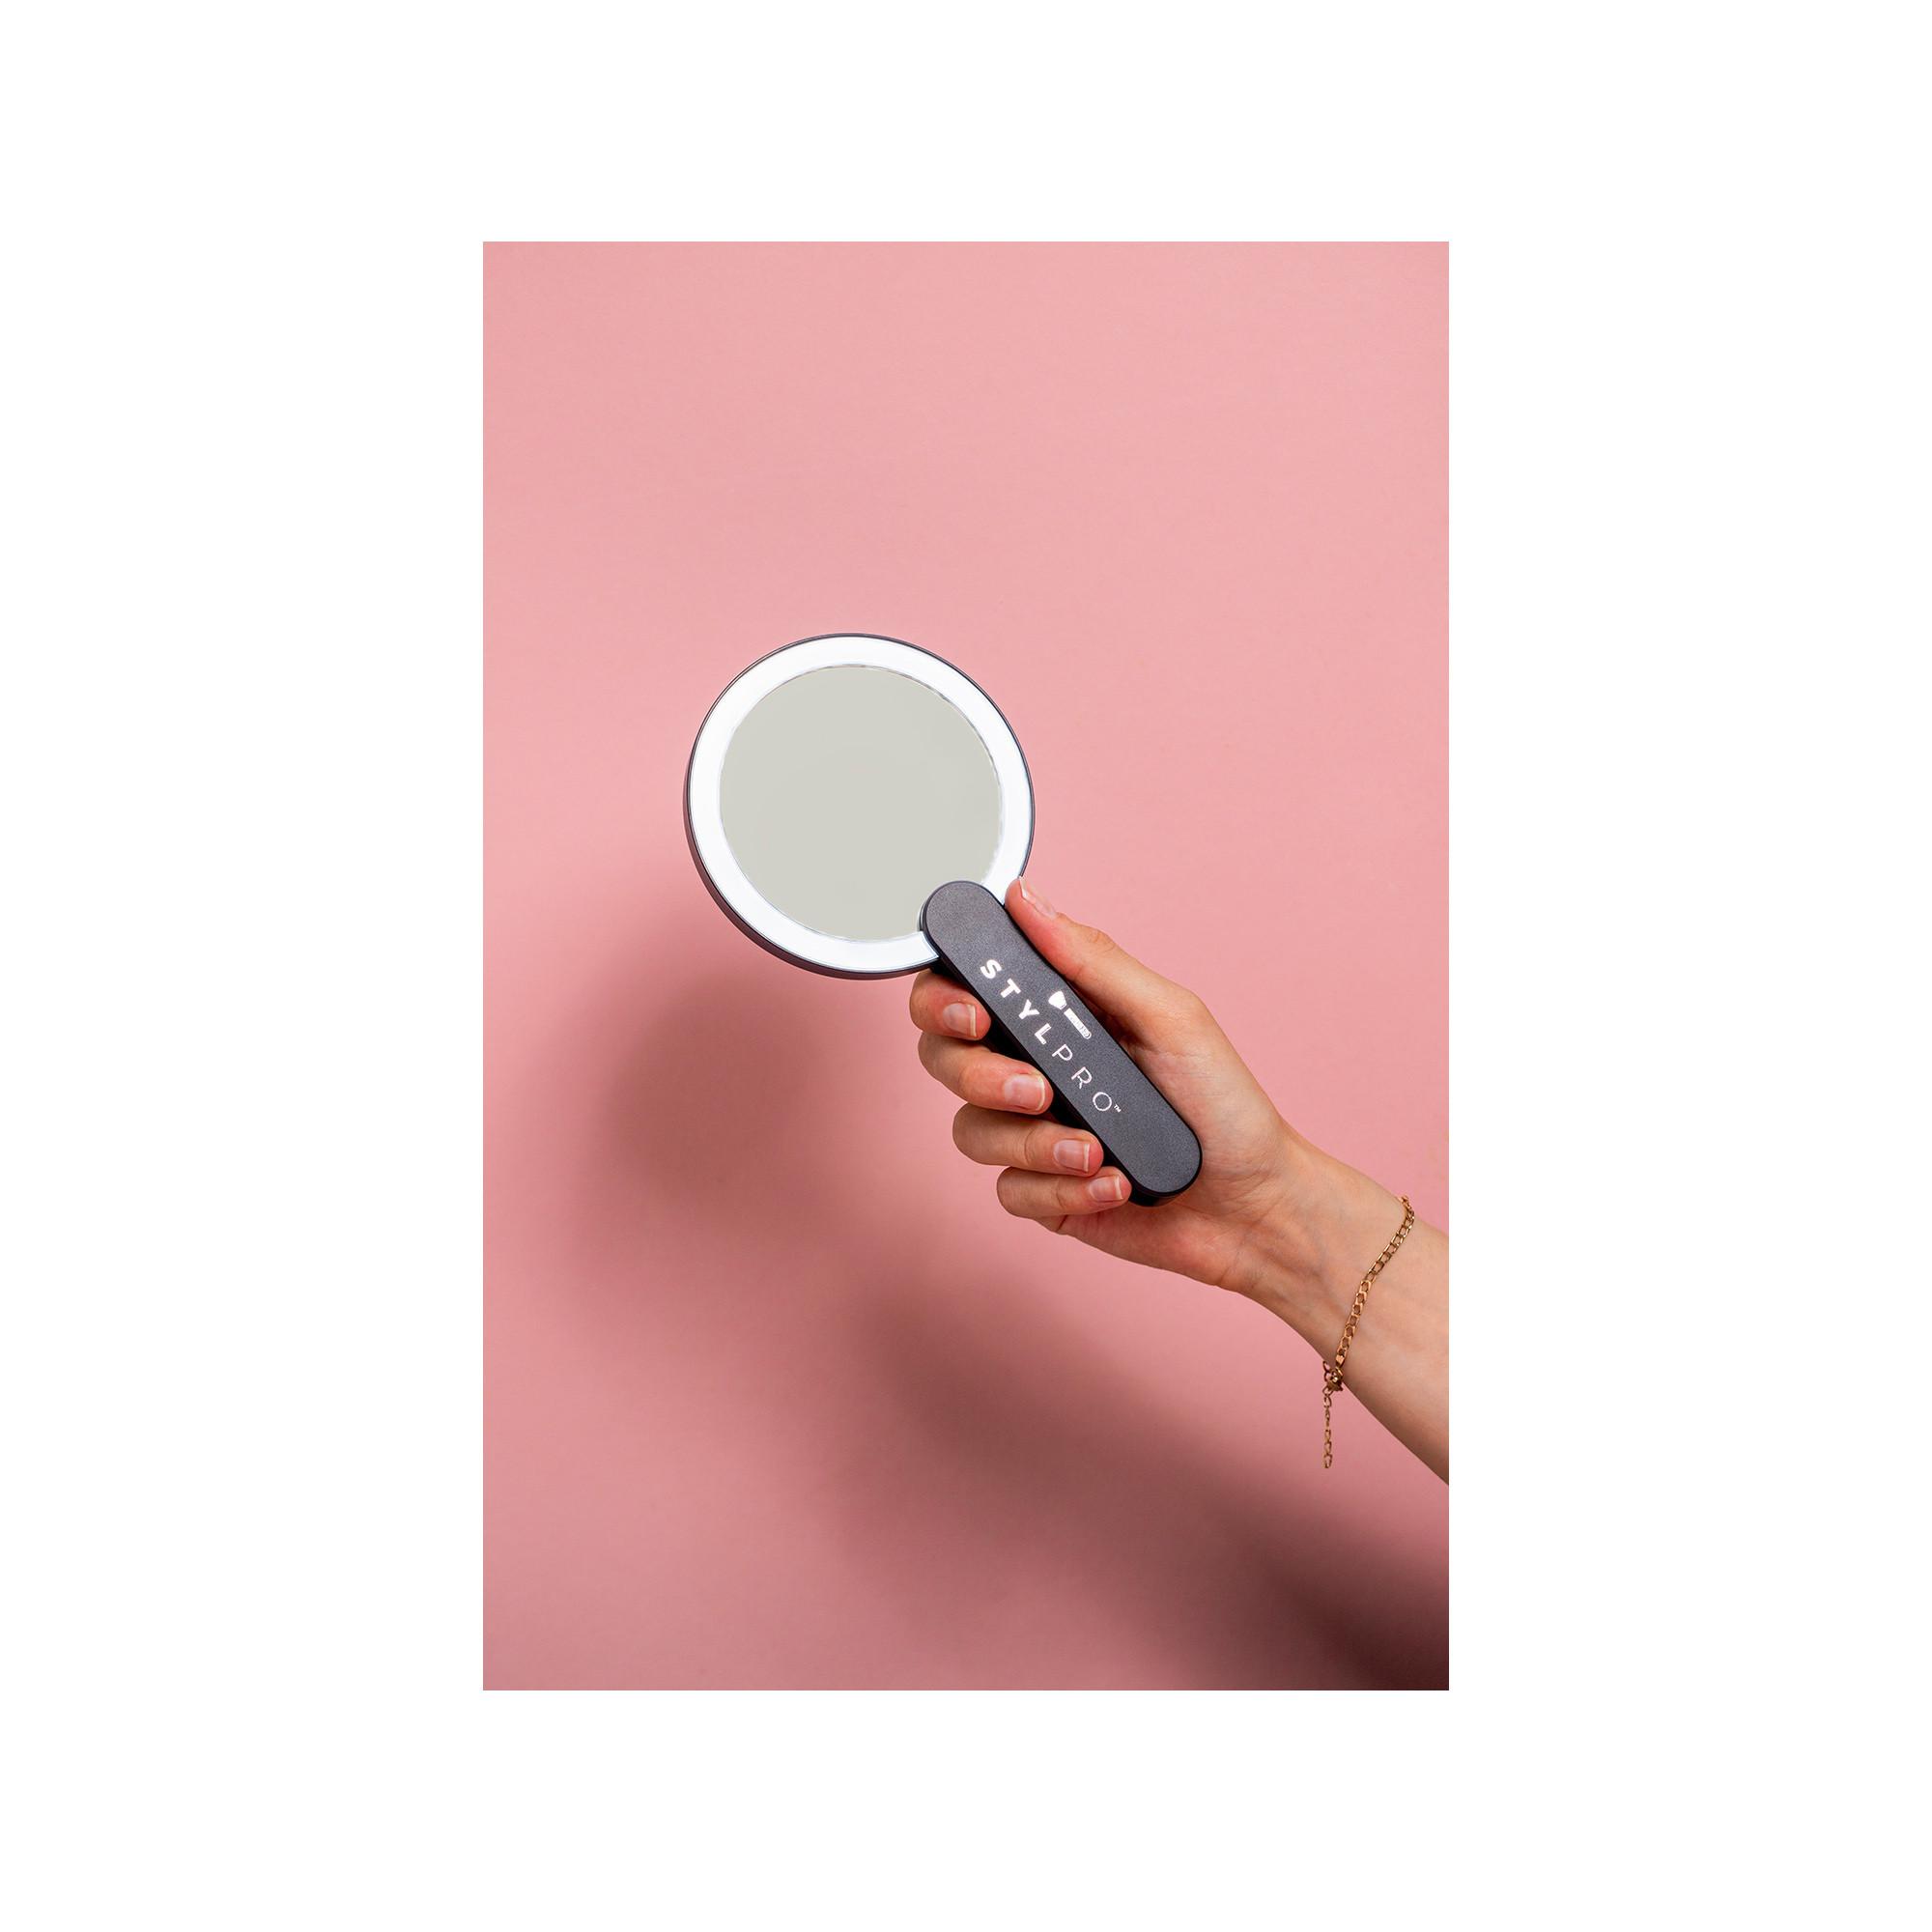 STYLPRO Stylpro LED Hand Mirror Specchio Compatto Portatile con LED 